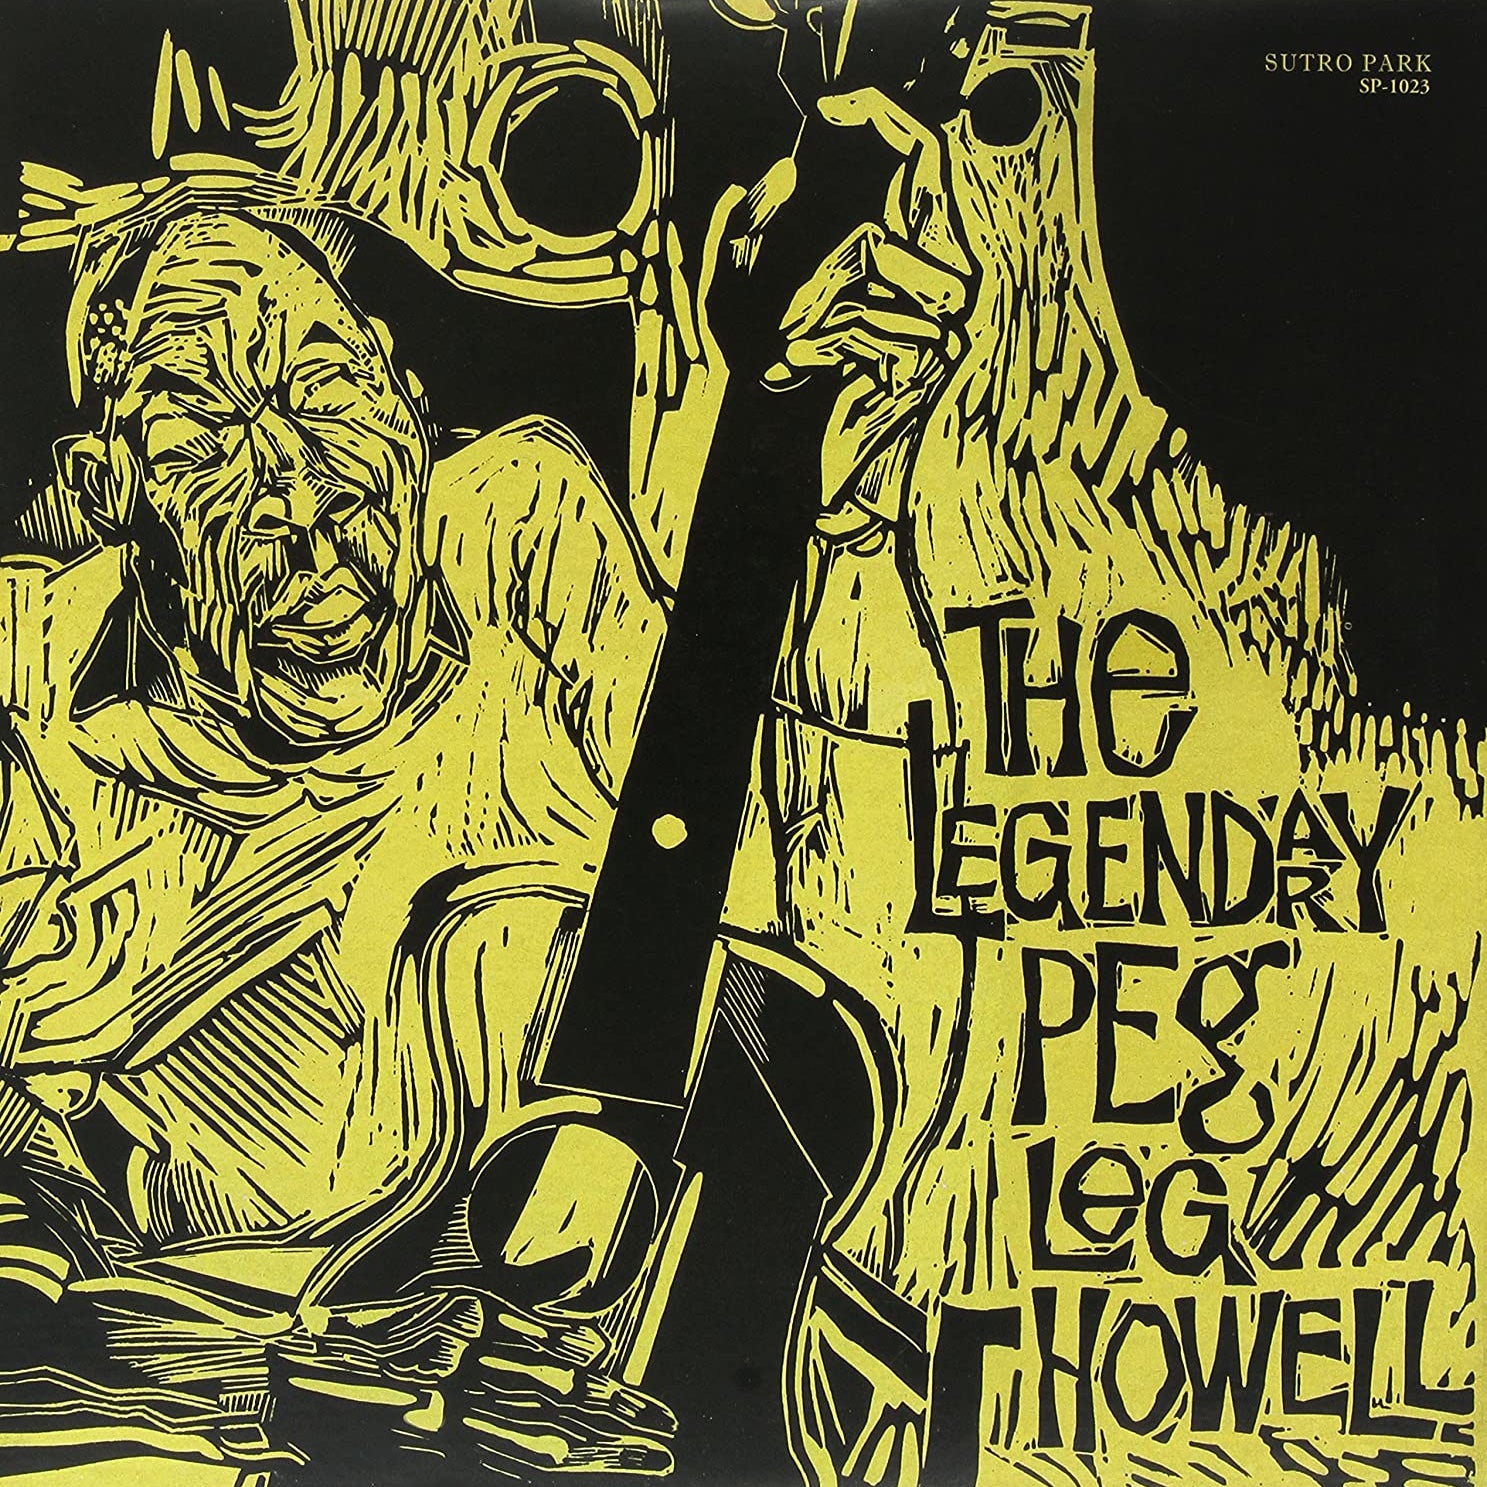 PEG LEG HOWELL - The Legendary Peg Leg Howell - LP - Vinyl